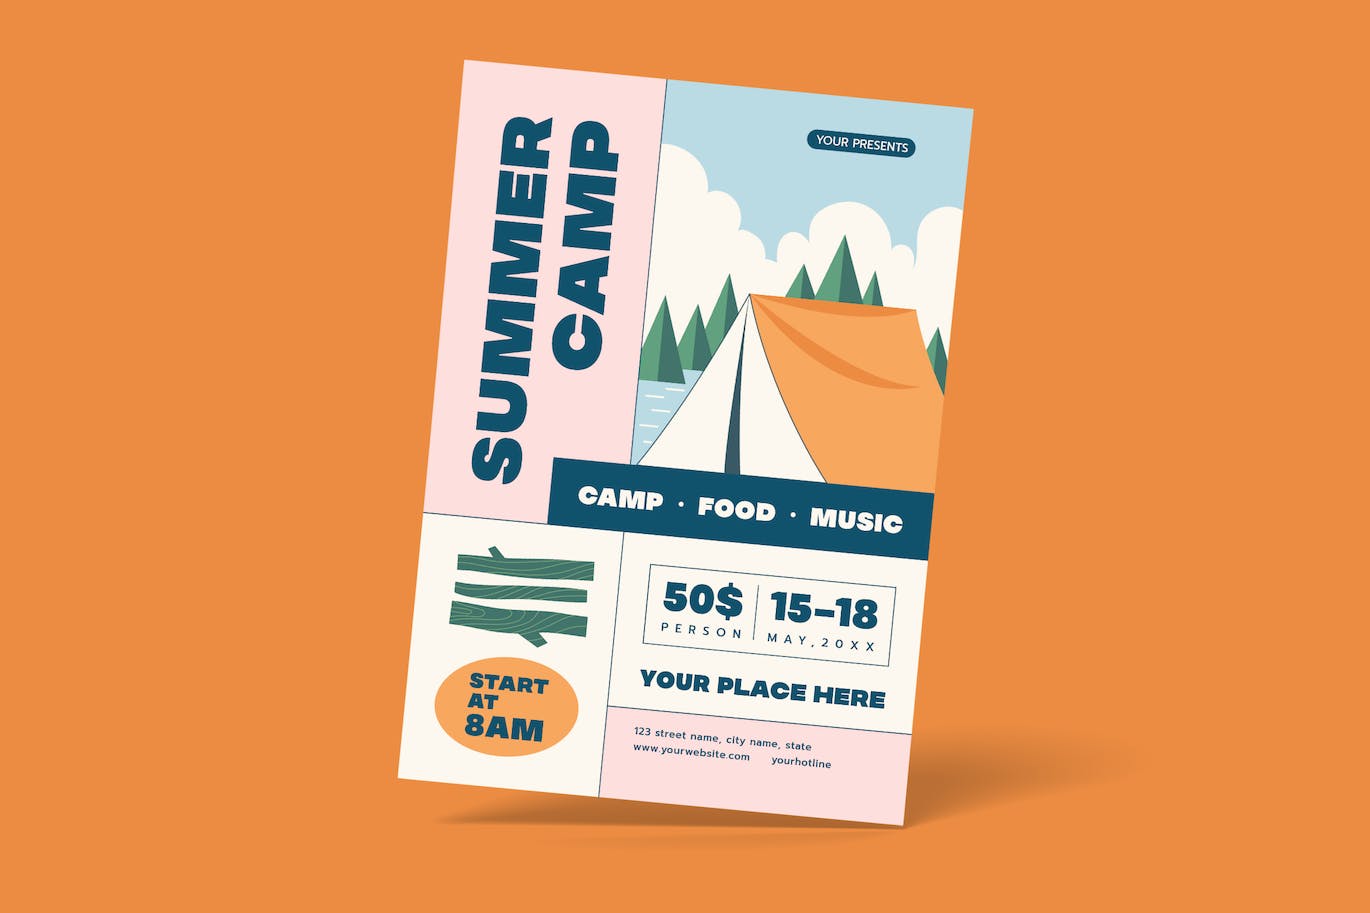 夏令营露营活动传单模板下载 Summer Camp Flyer 设计素材 第1张